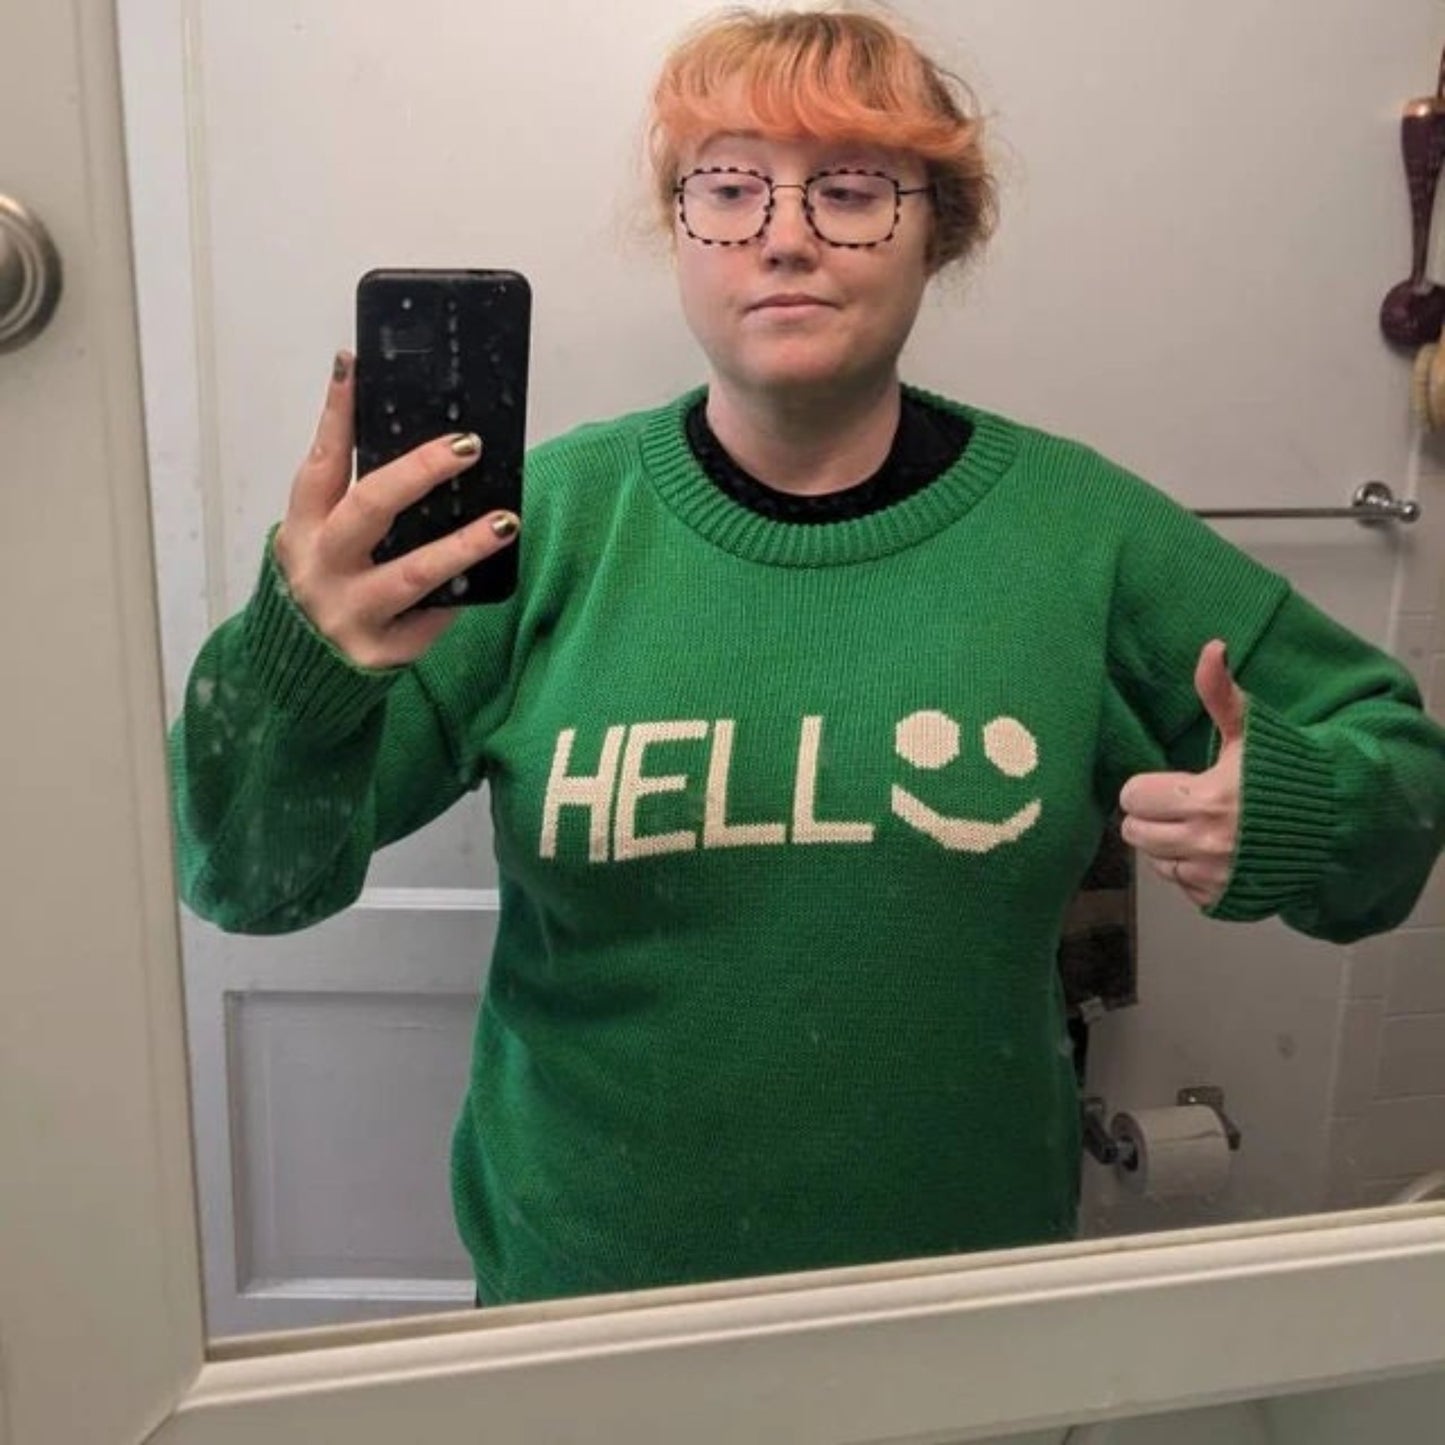 Hello fun sweater